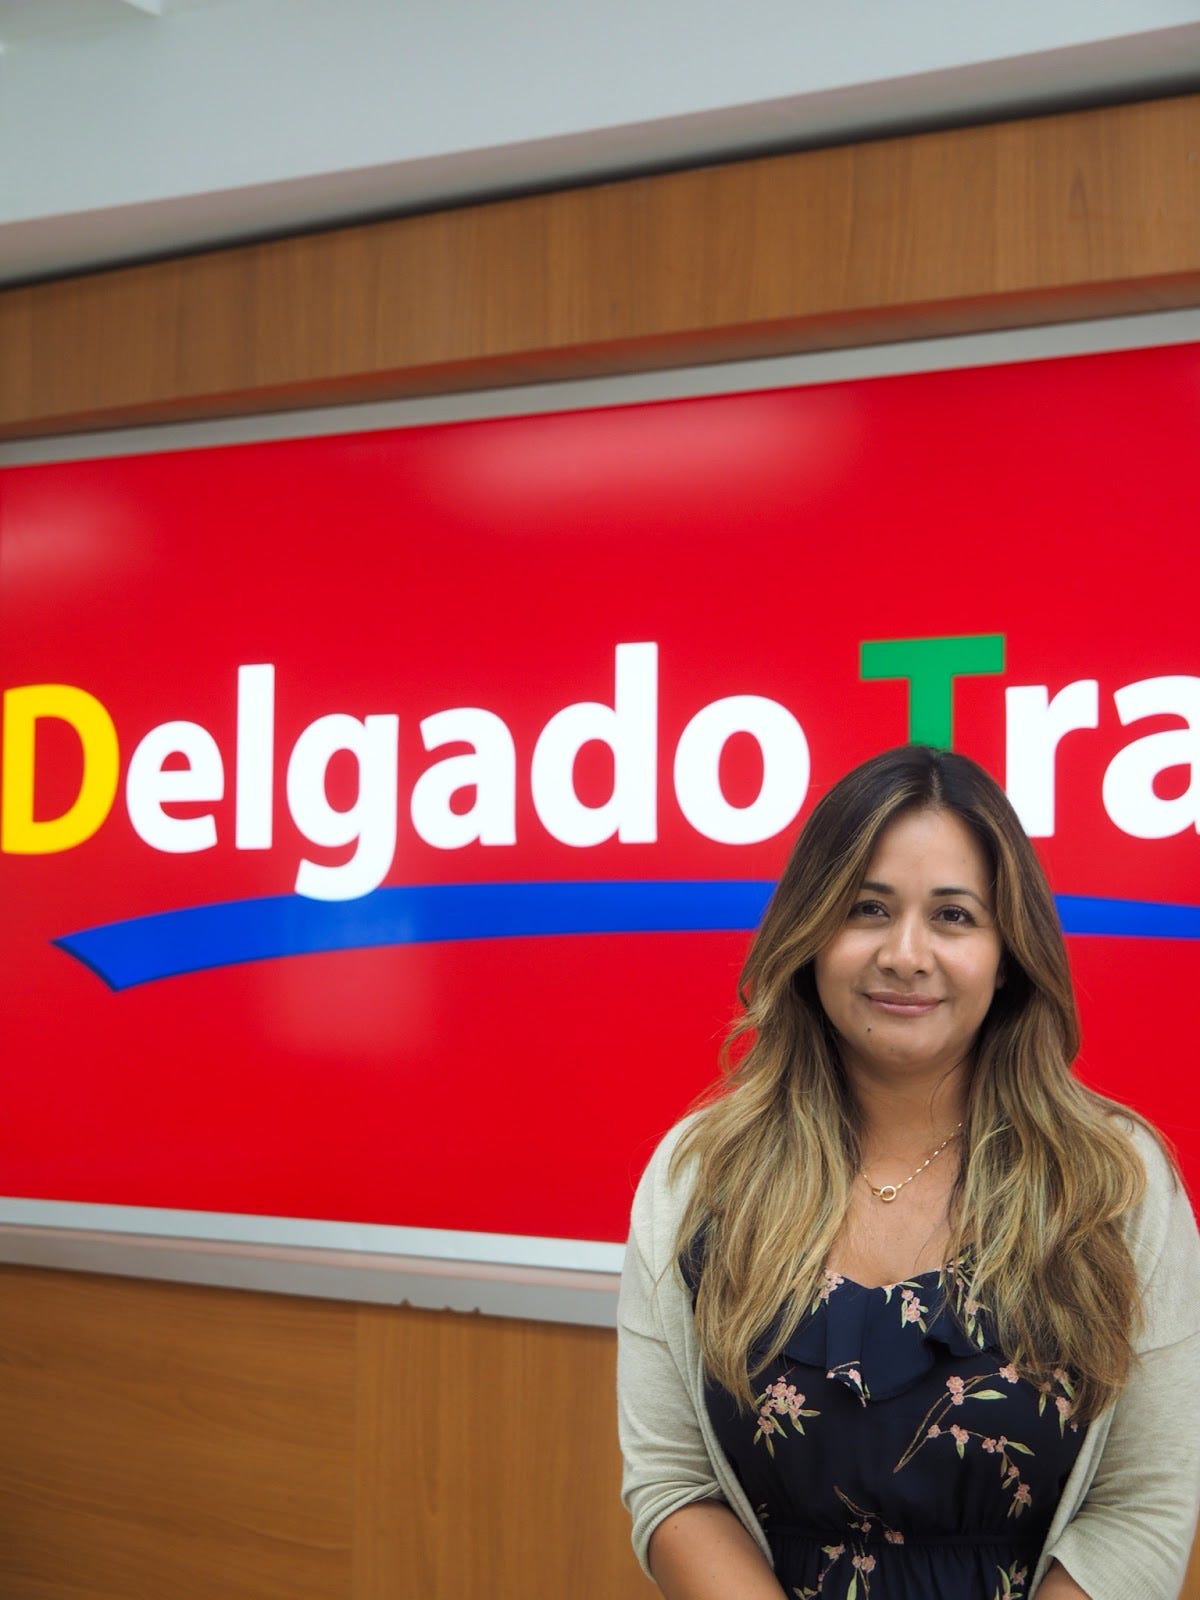 delgado travel agency inc fotos